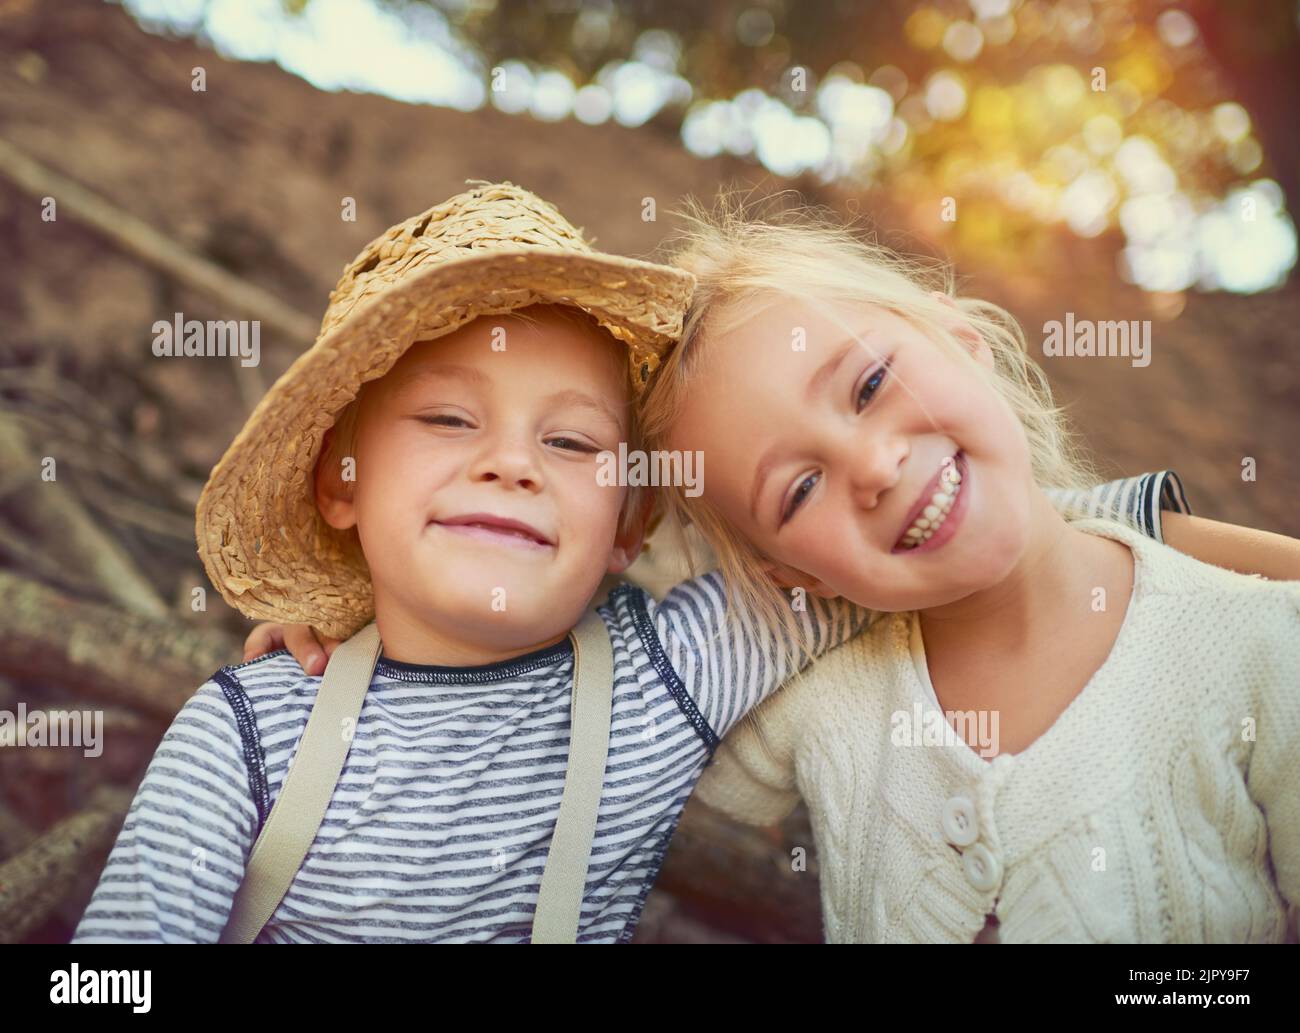 Spaß zu haben ist unsere Regel Nummer eins. Portrait von zwei kleinen Kindern, die im Freien spielen. Stockfoto